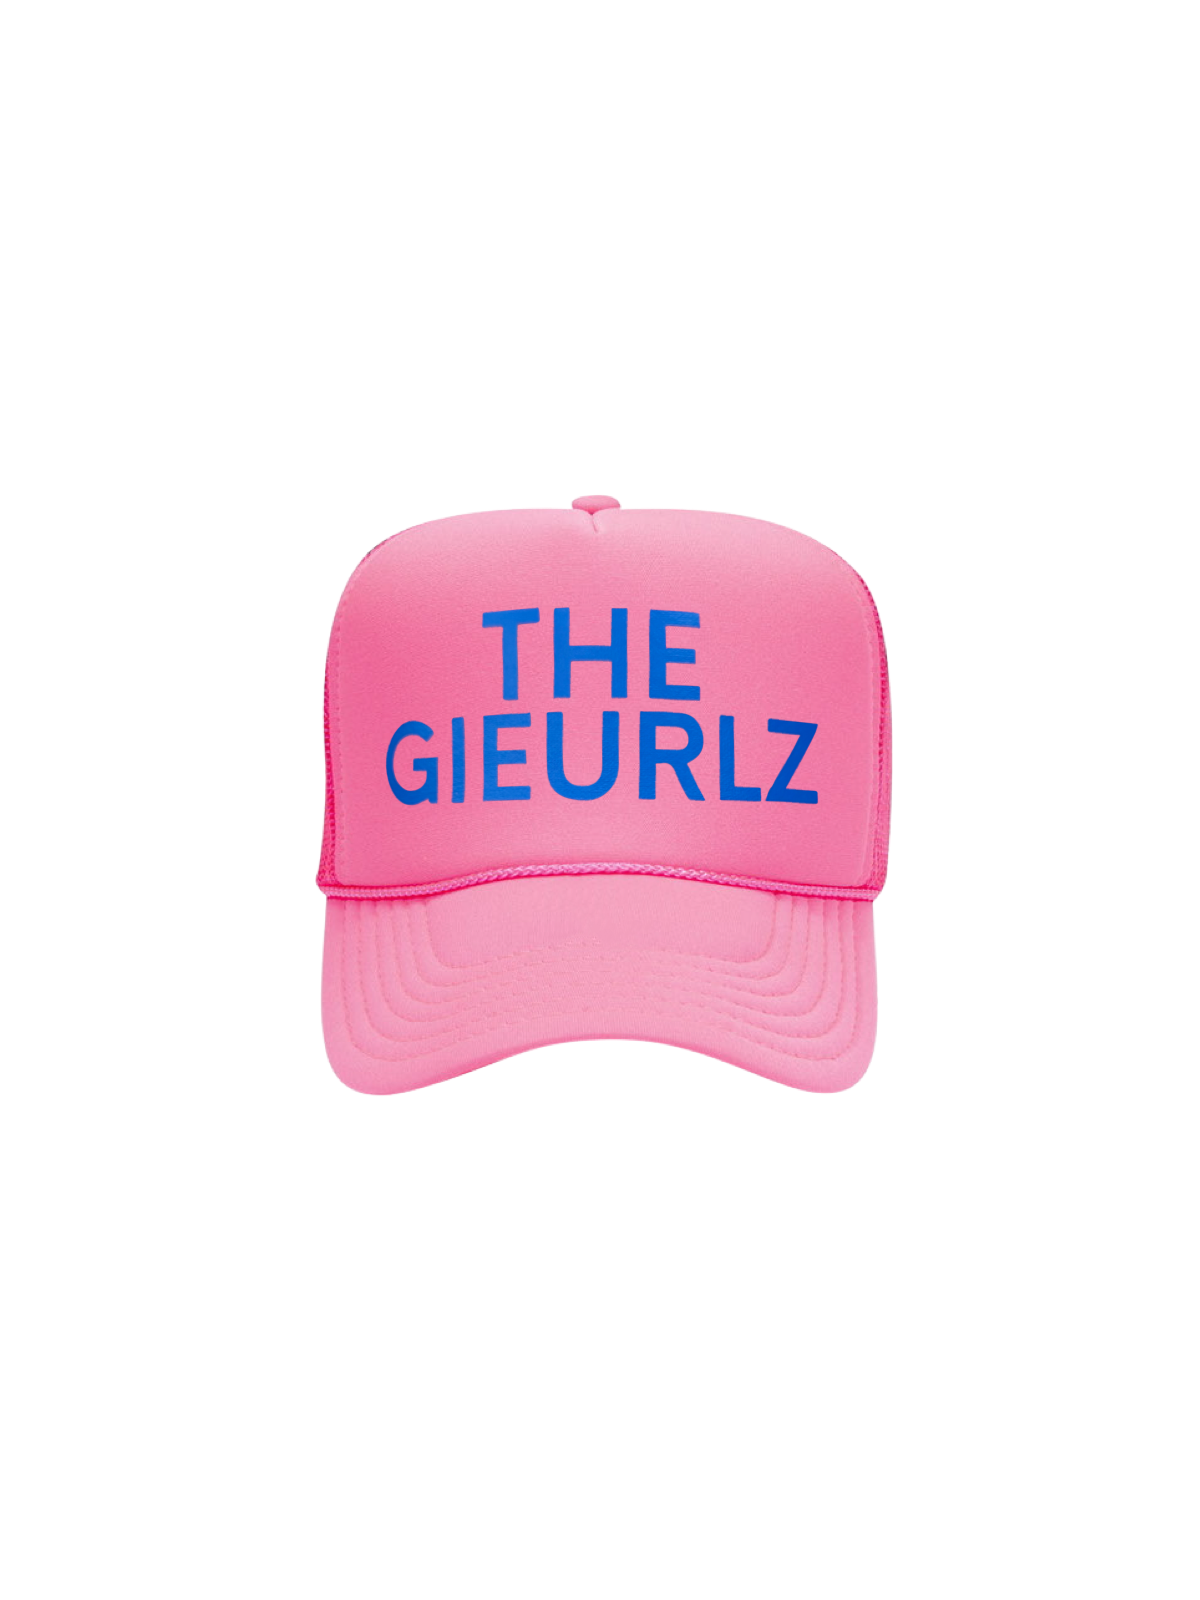 THE GEIURLZ TRUCKER HAT